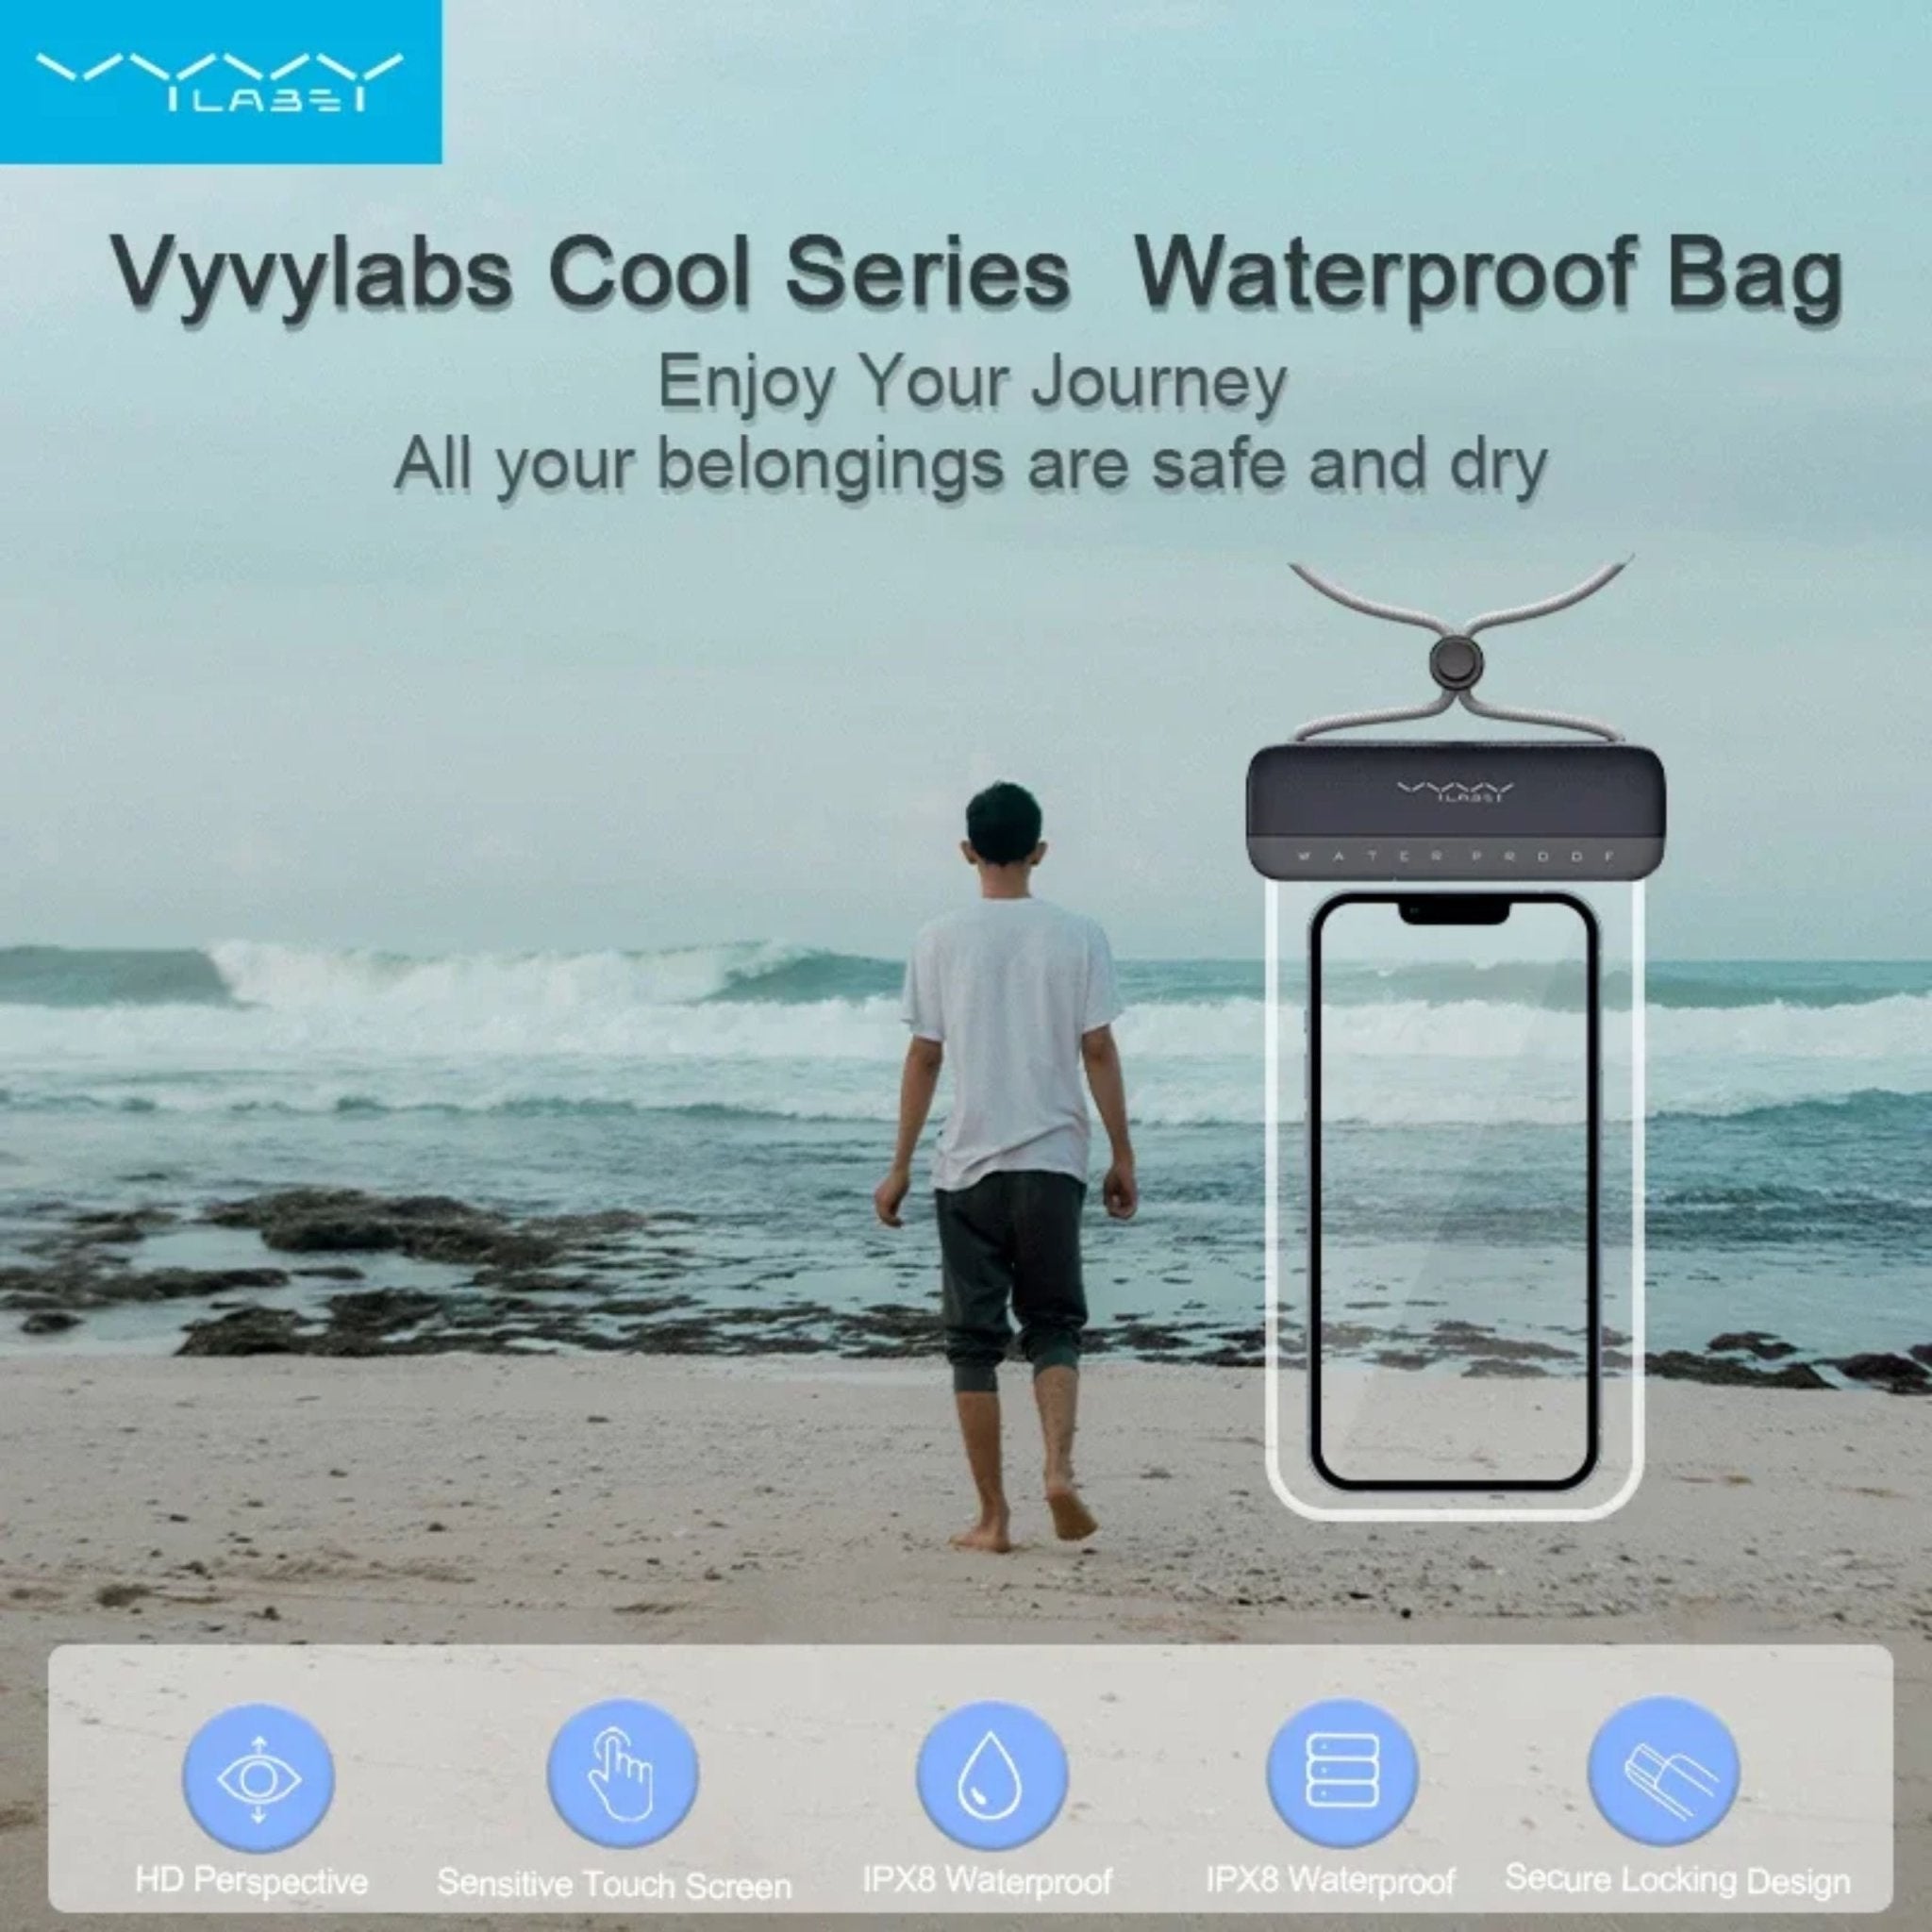 Vyvylabs Universal Cool Series Waterproof Bag